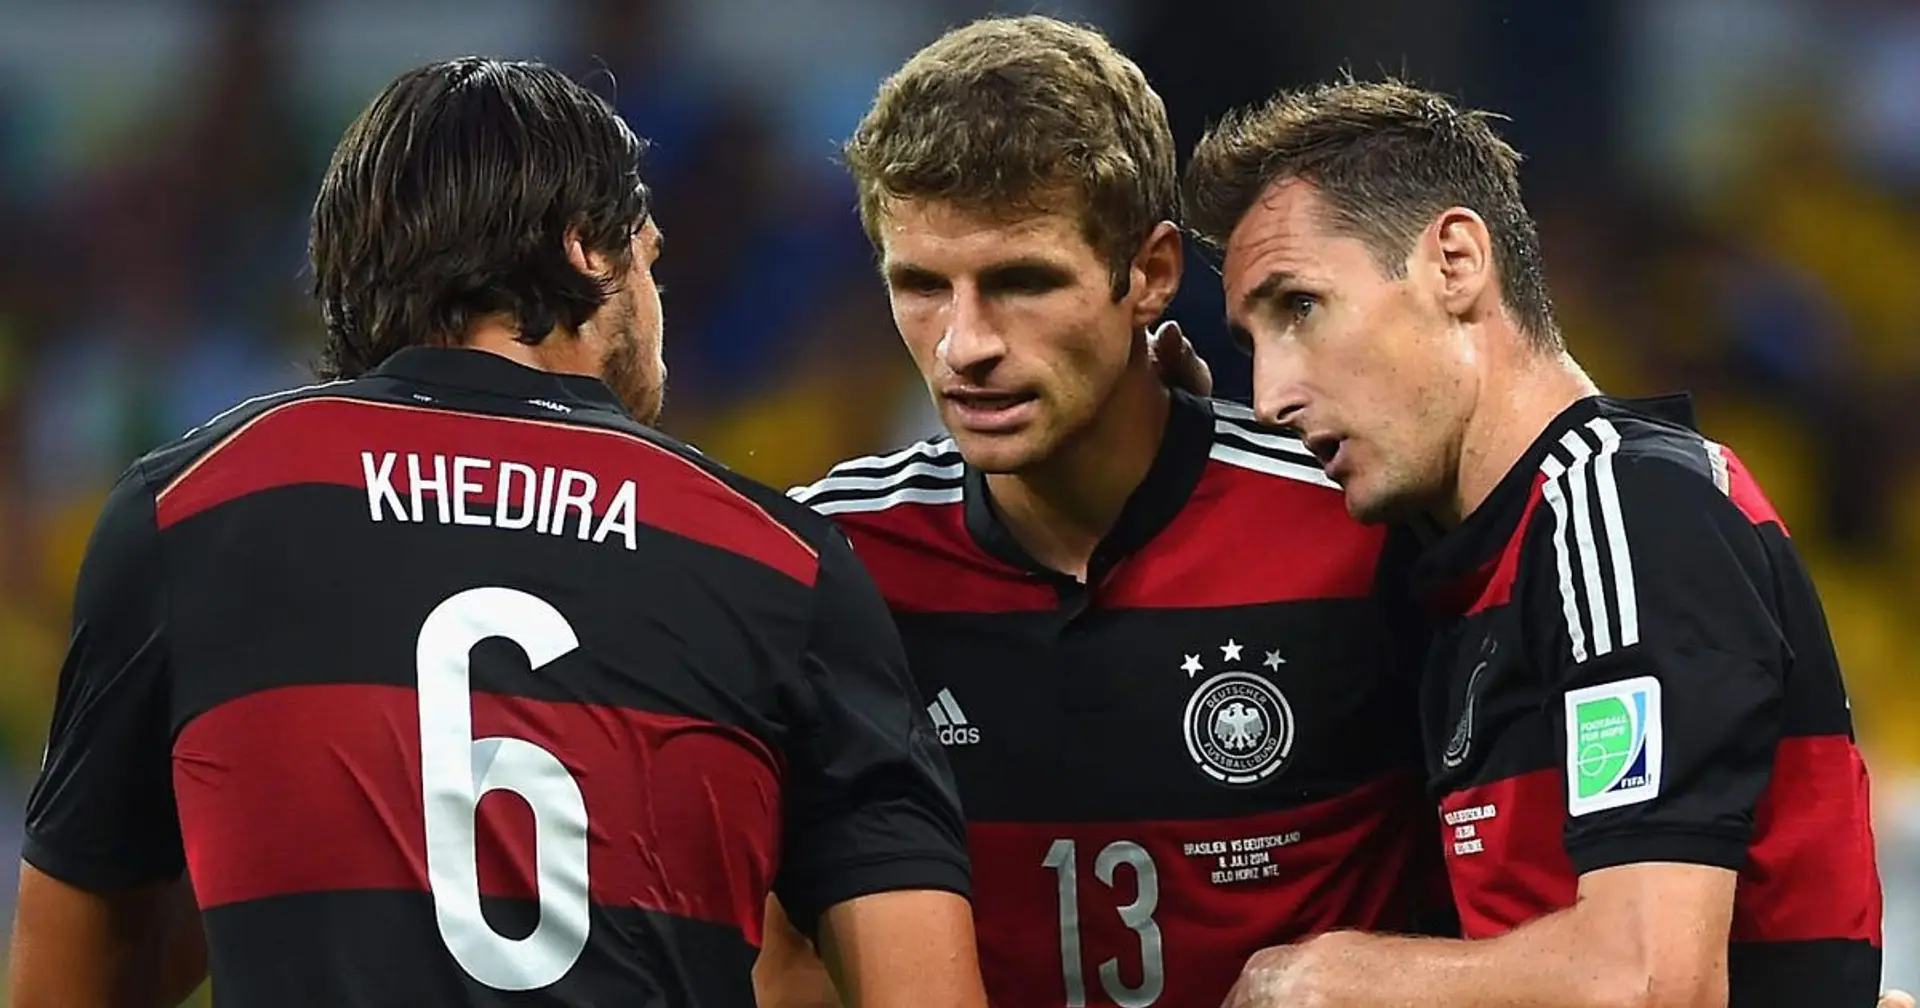 Thomas Müller freut sich auf das Wiedersehen mit Khedira: "Ein Kind der Bundesliga"